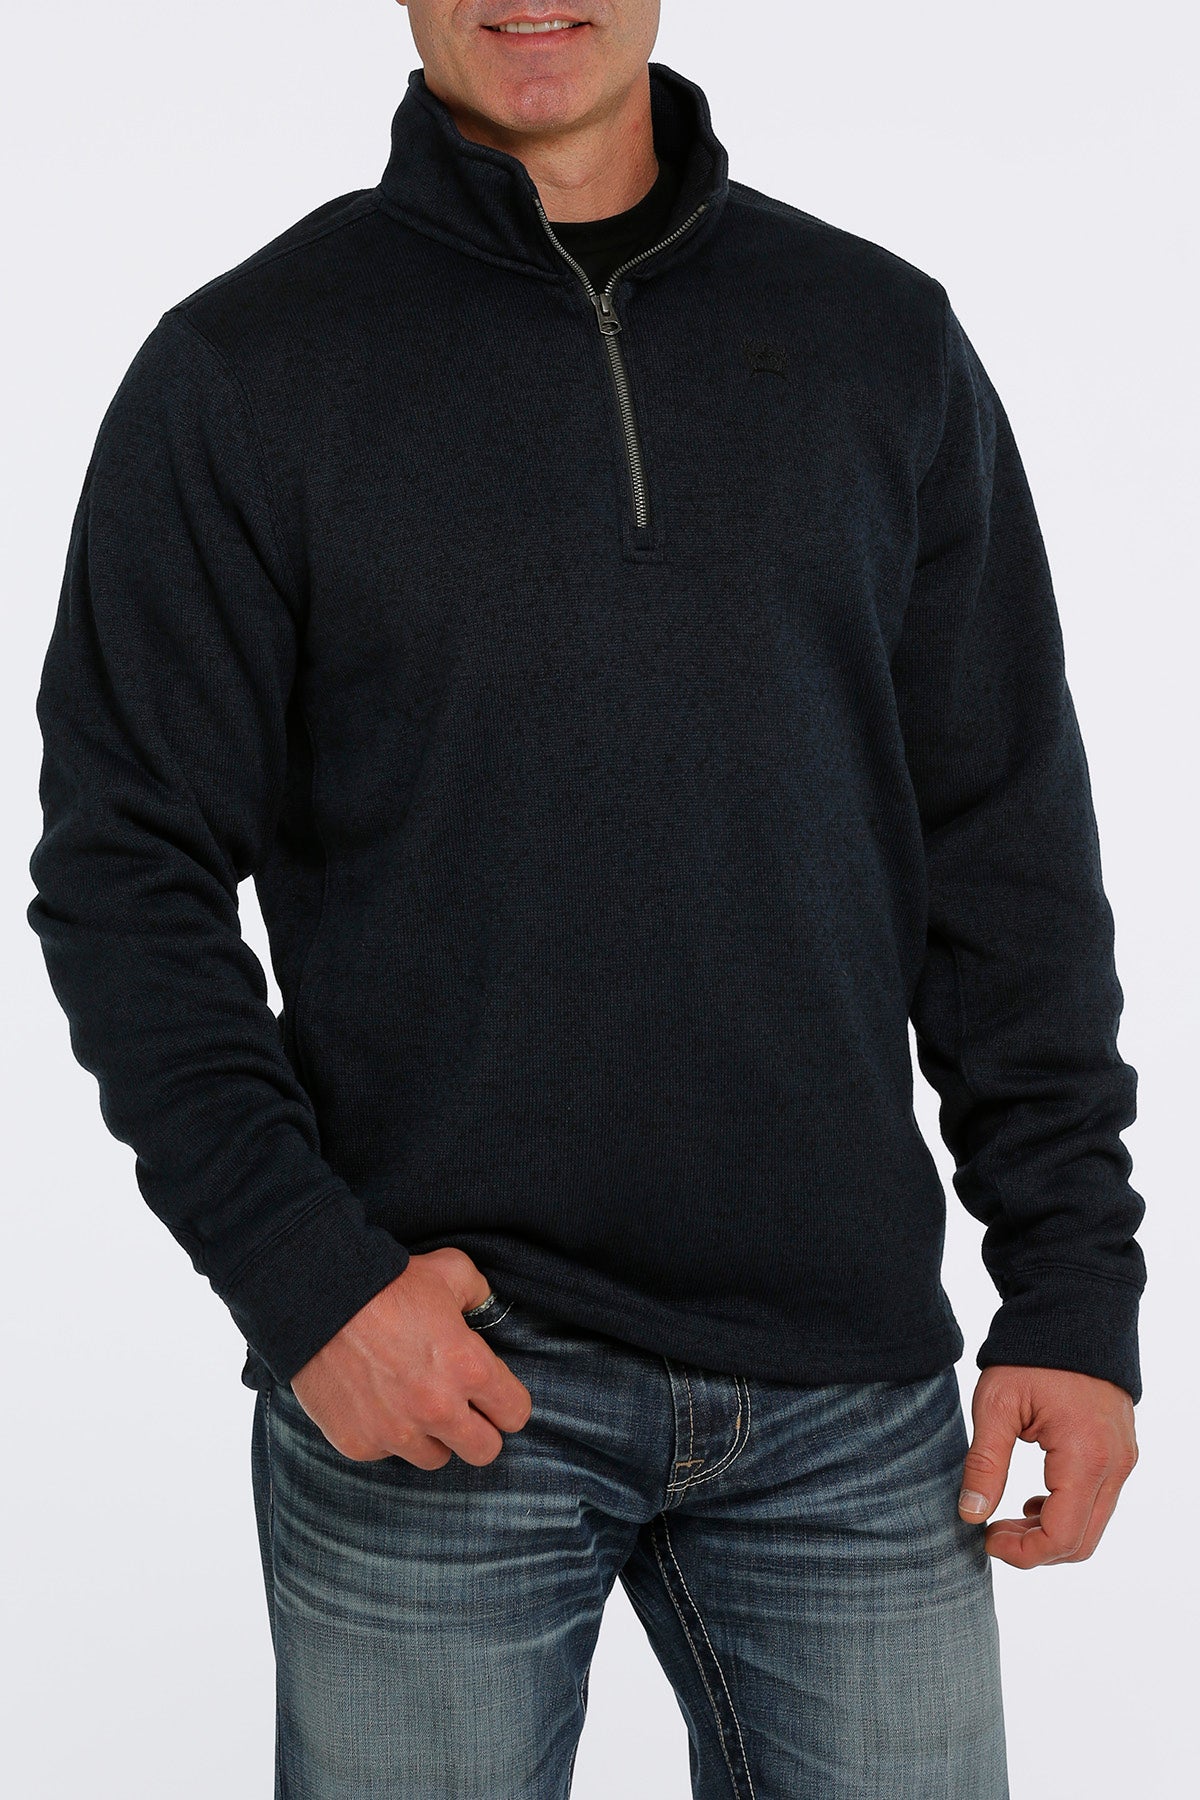 CINCH Men's Navy 1/4 Zip Sweater